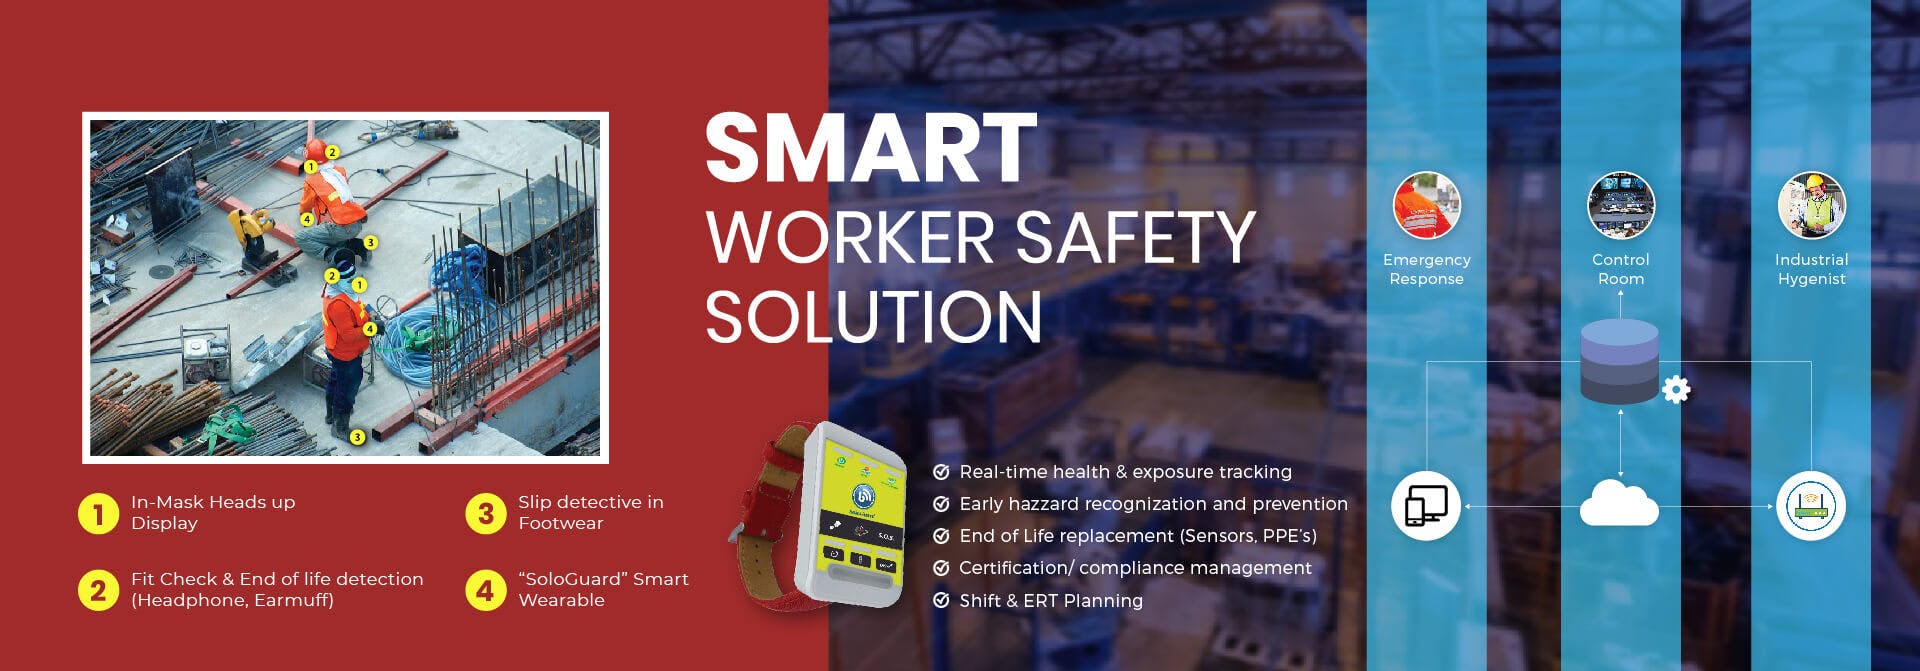 Smart Worker Safety.jpg